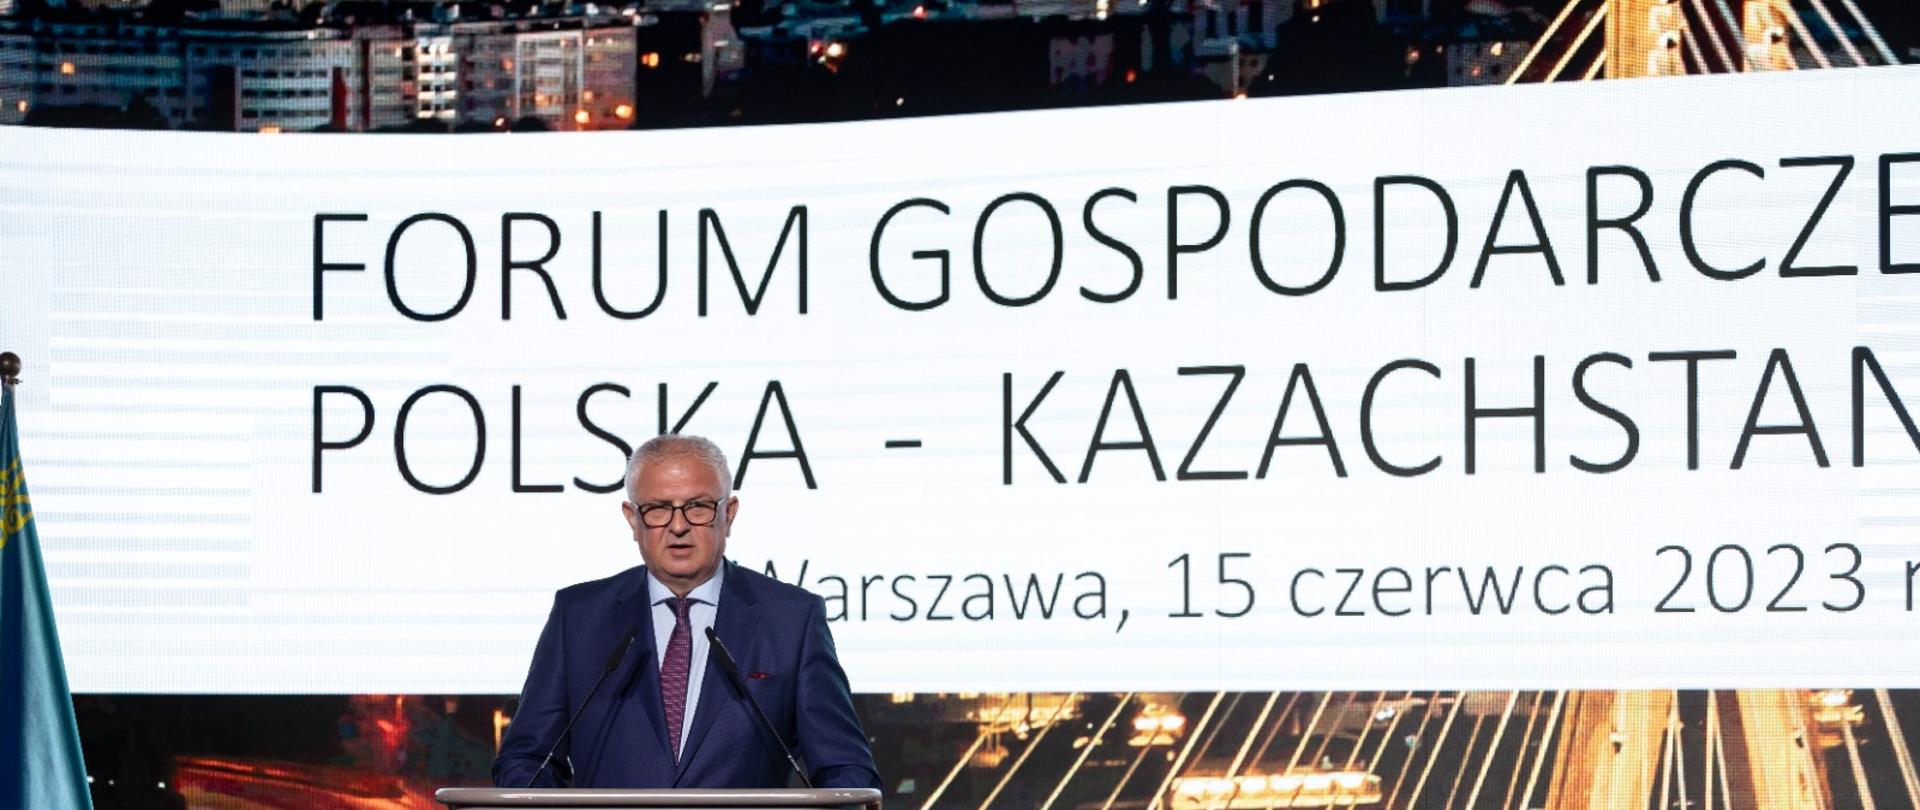 Wiceminister Grzegorz Piechowiak przemawia podczas forum gospodarczego Polska – Kazachstan.